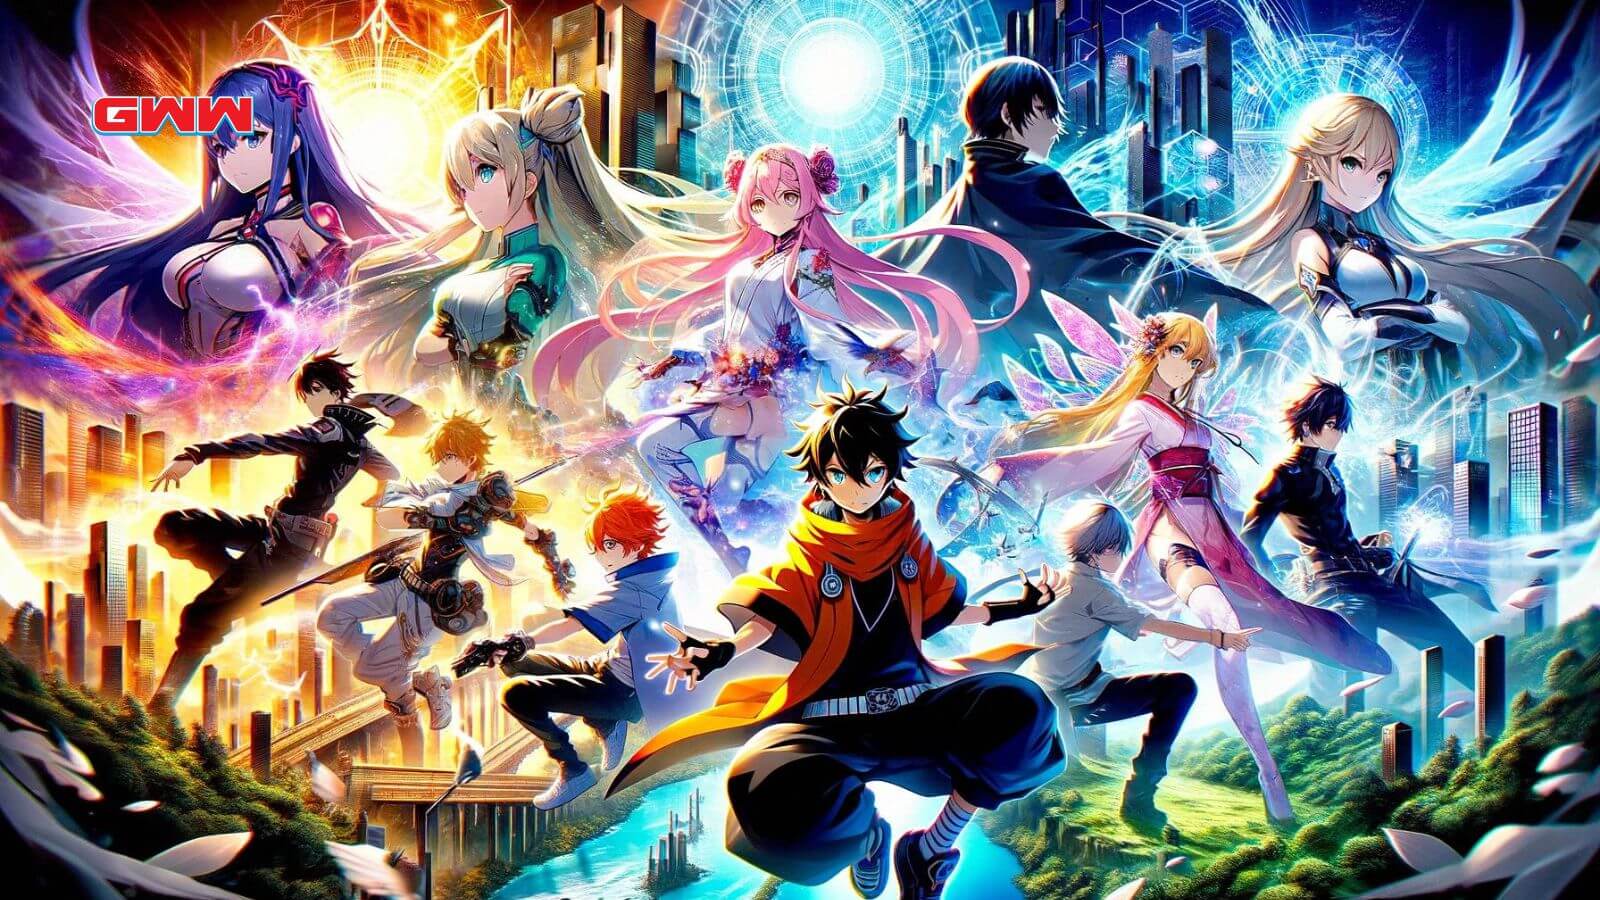 Una escena de anime vibrante y dinámica que muestra cinco personajes de anime populares de diferentes series, cada uno en una pose distinta y poderosa.